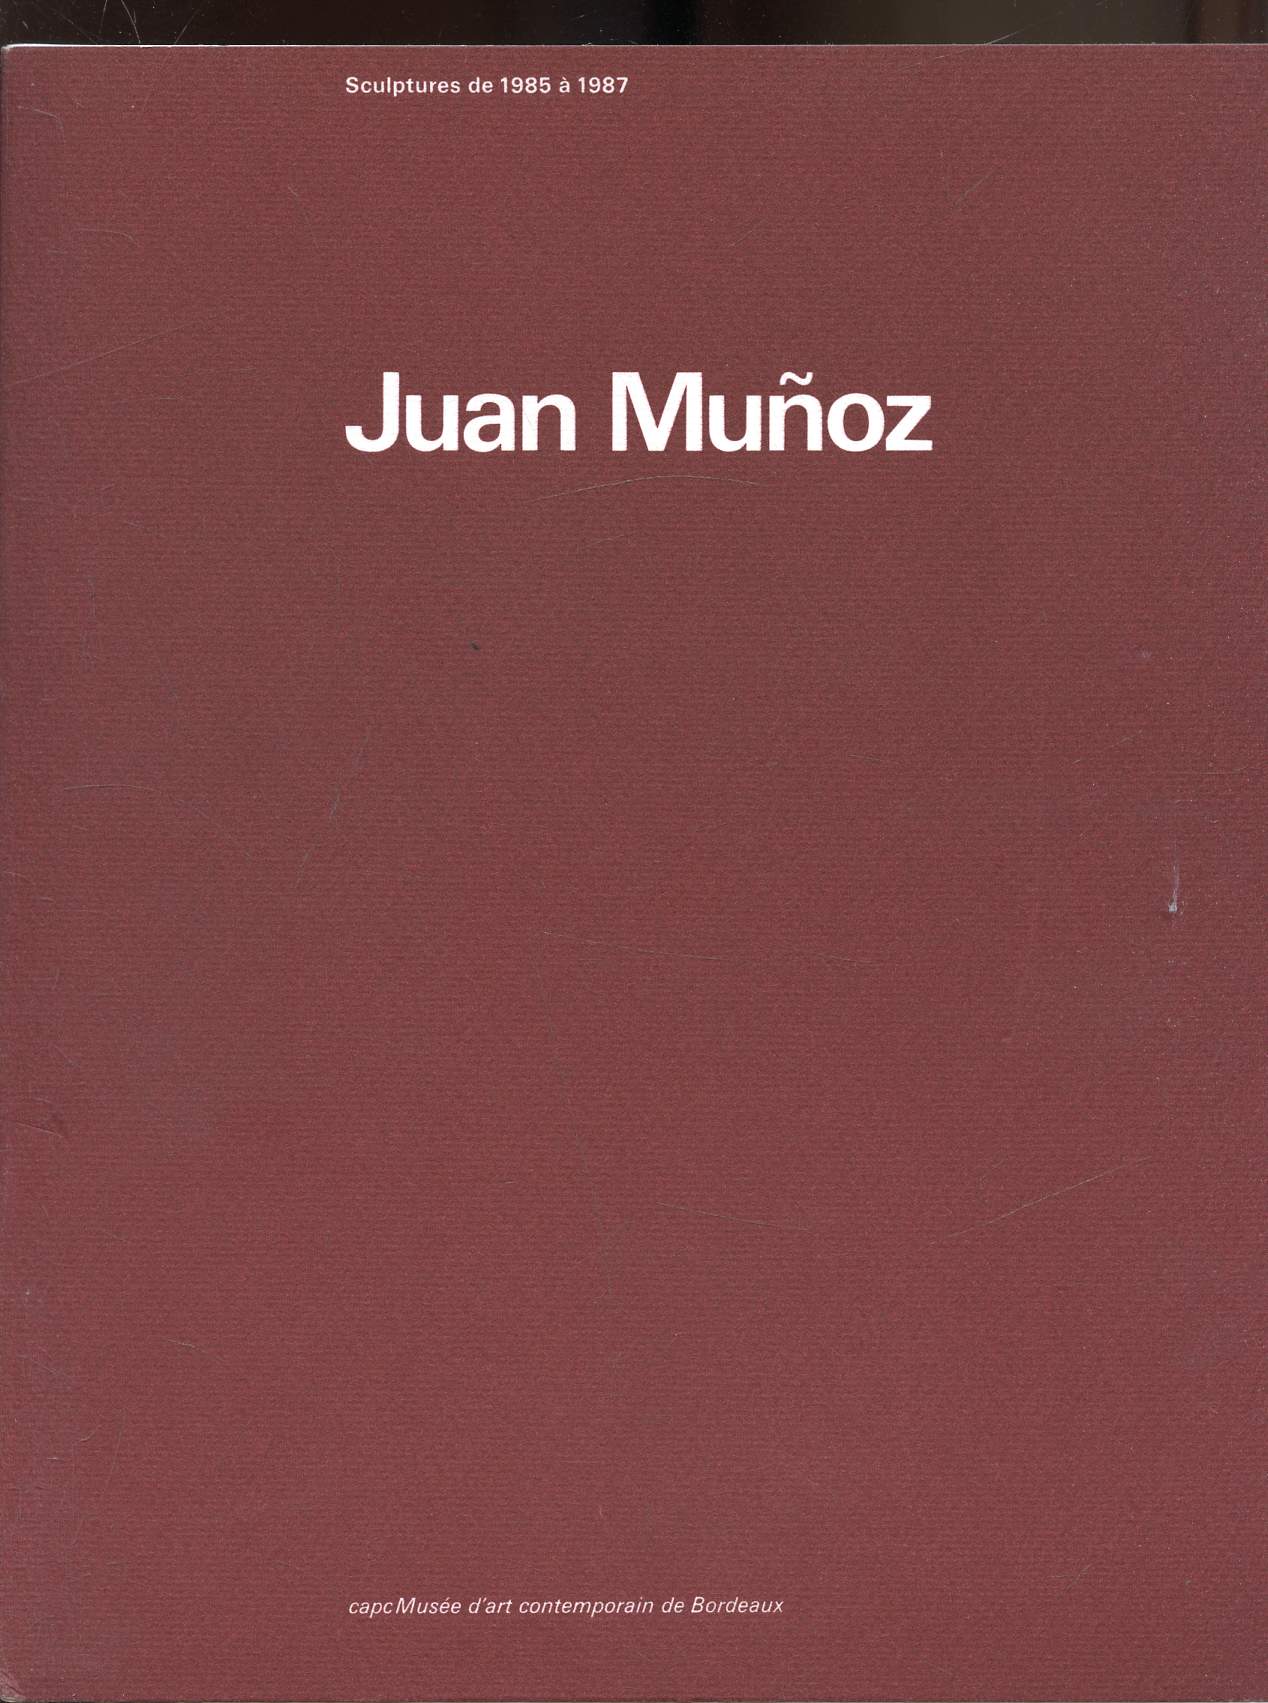 Juan Munoz - Sculptures de 1985  1987 - du 25 septembre au 22 novembre 1987